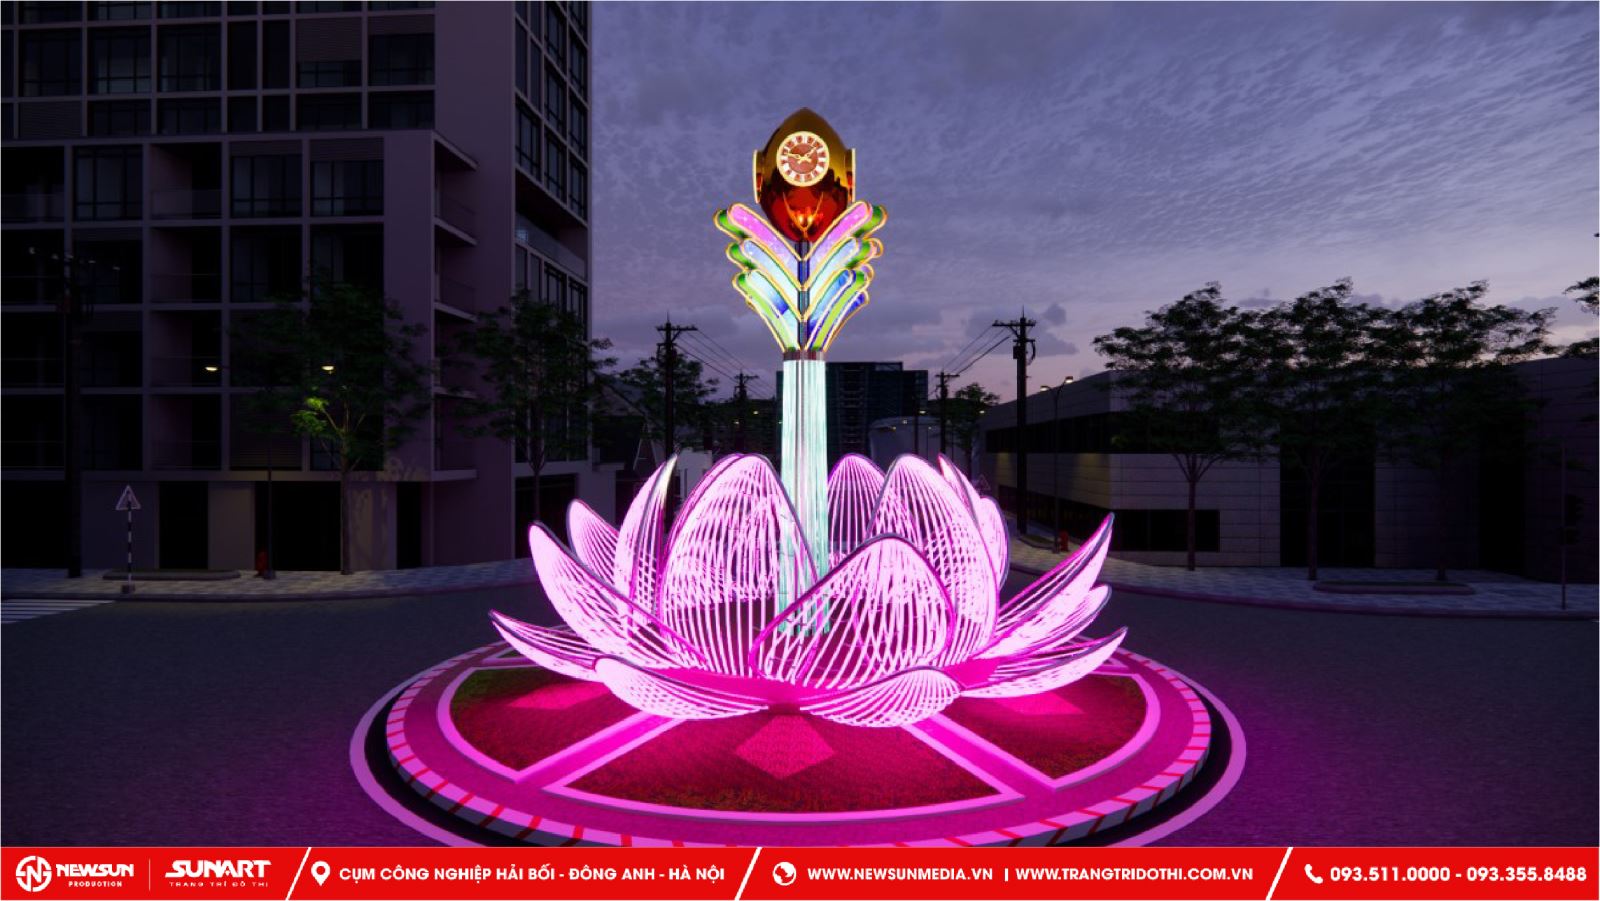 Trang trí biểu tượng hoa sen tại bùng binh cho thành phố Hải Phòng